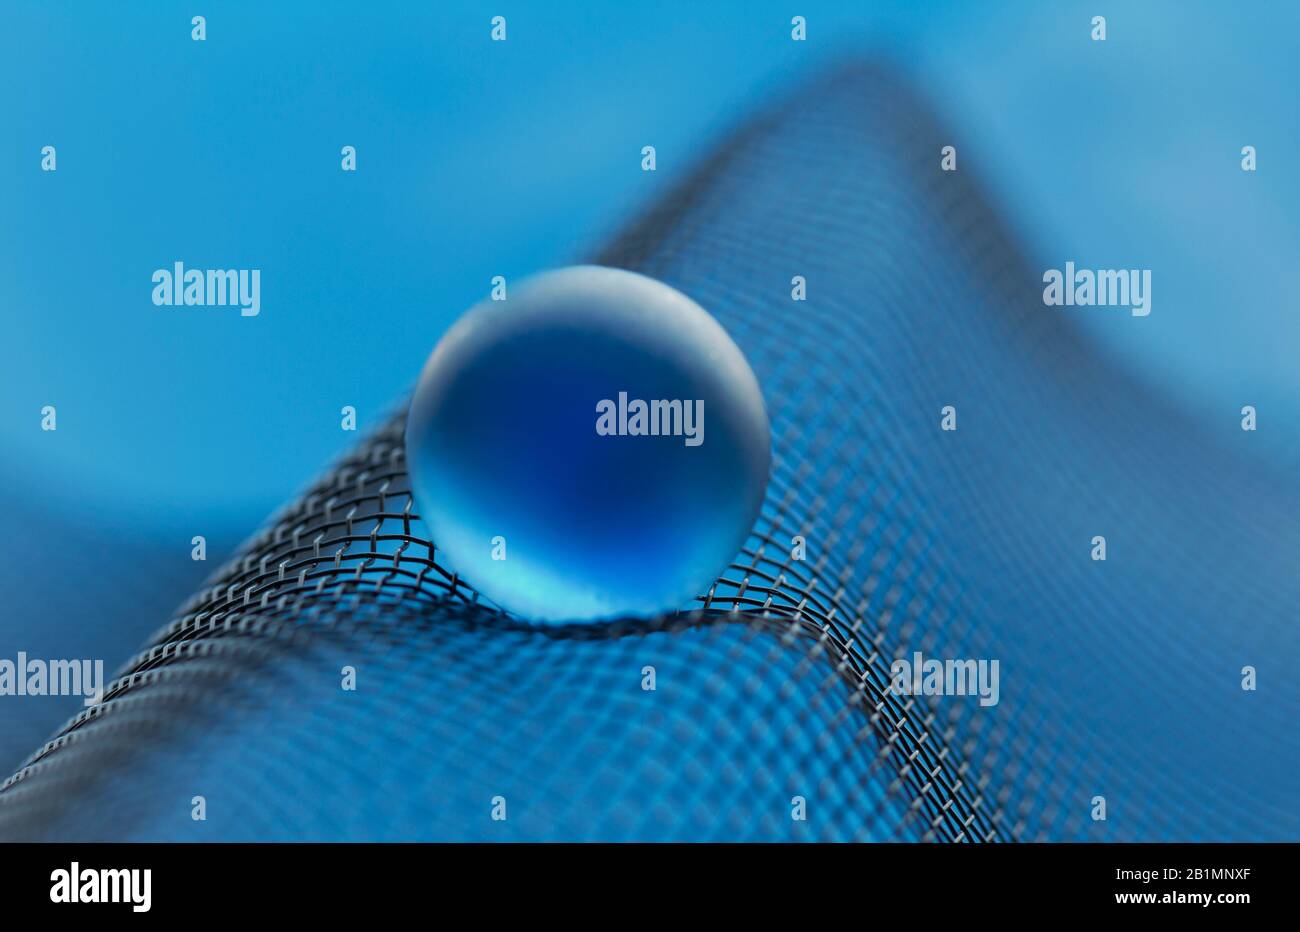 Netzwerk mit blauer Glaskugel in classic-blue Stock Photo